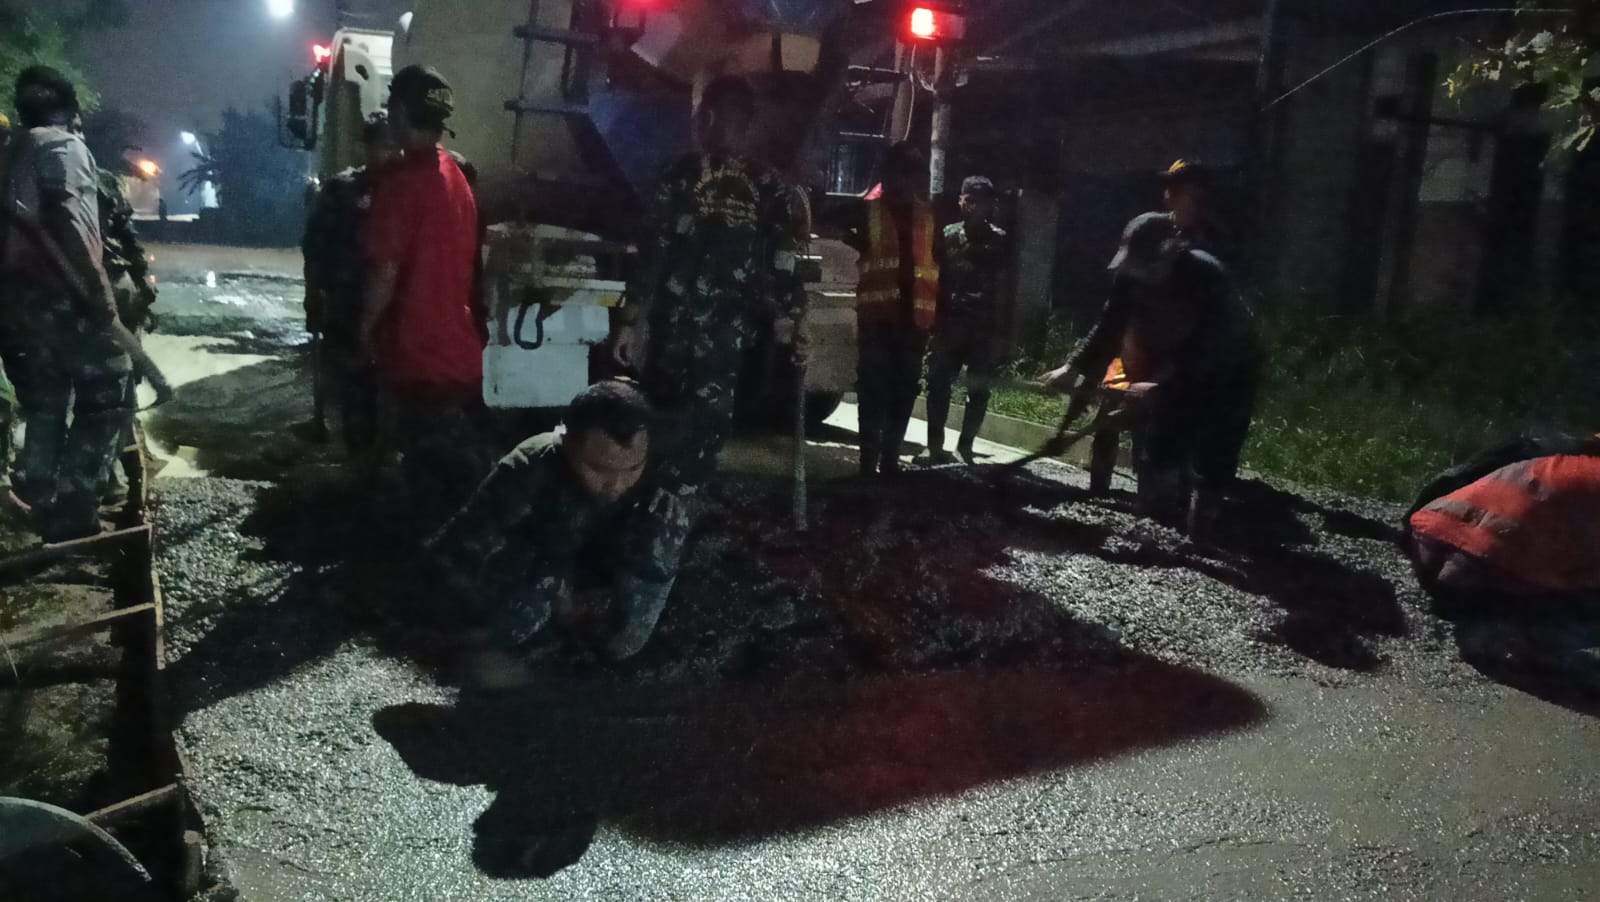 Proses pengecoran jalan bersama TNI AD dan masyarakat di Bekasi (Sinpo.id/Kodim 0507 Bekasi)